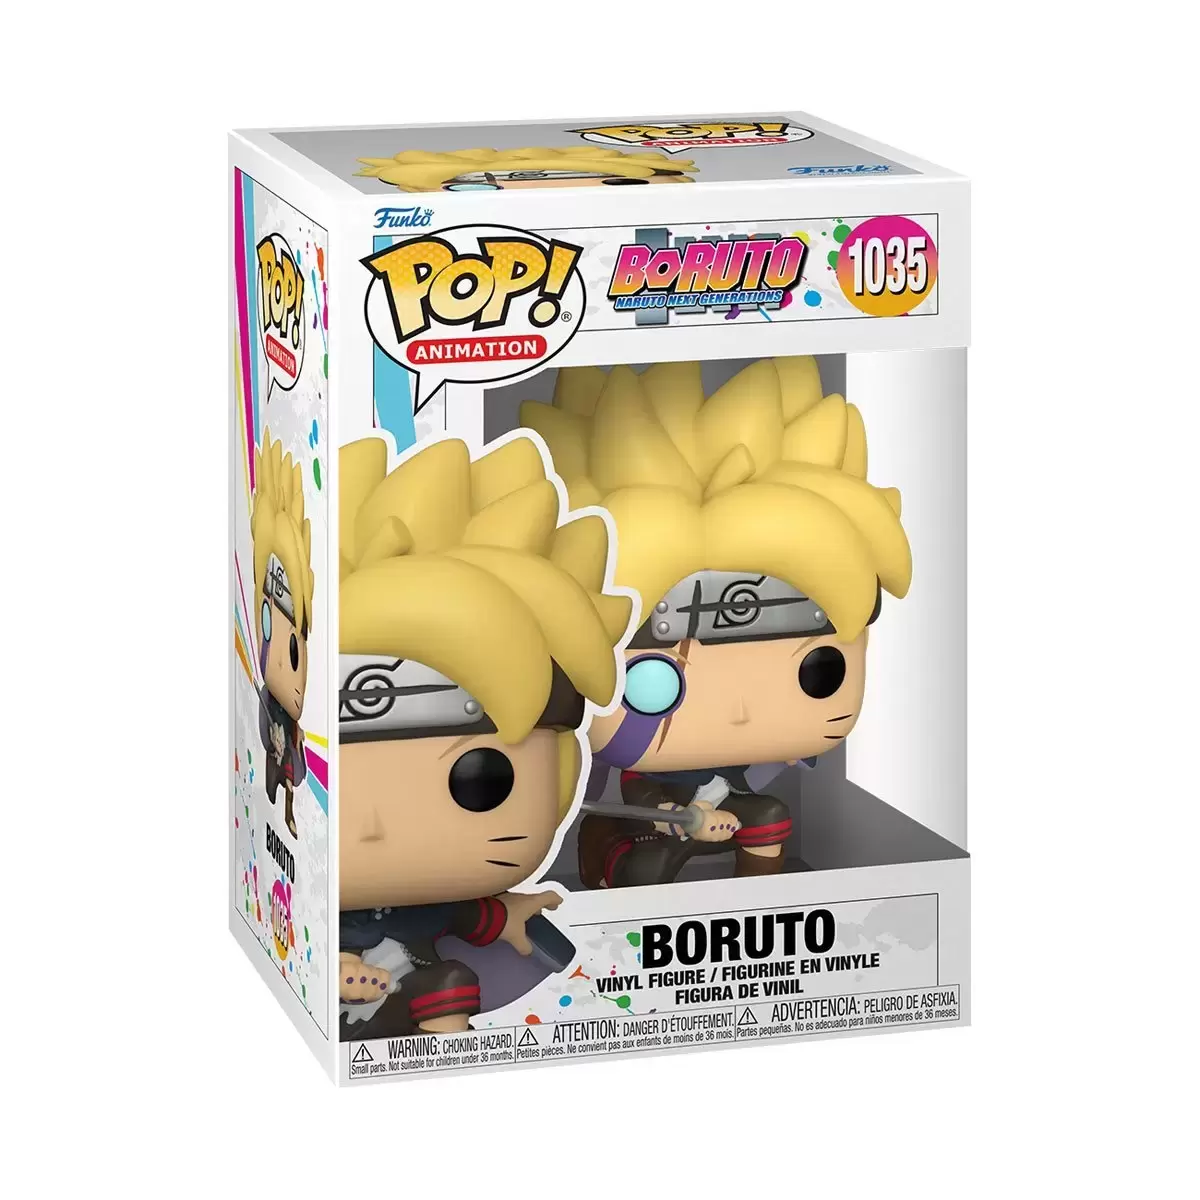 Boruto: Naruto Next Generations - Boruto Uzumaki - figurine POP